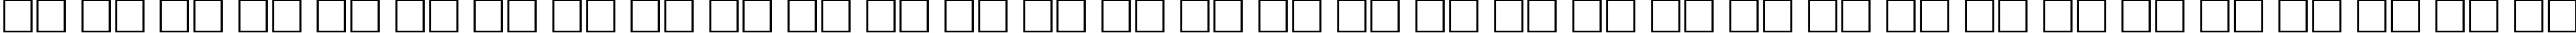 Пример написания русского алфавита шрифтом Antiqua Bold80b